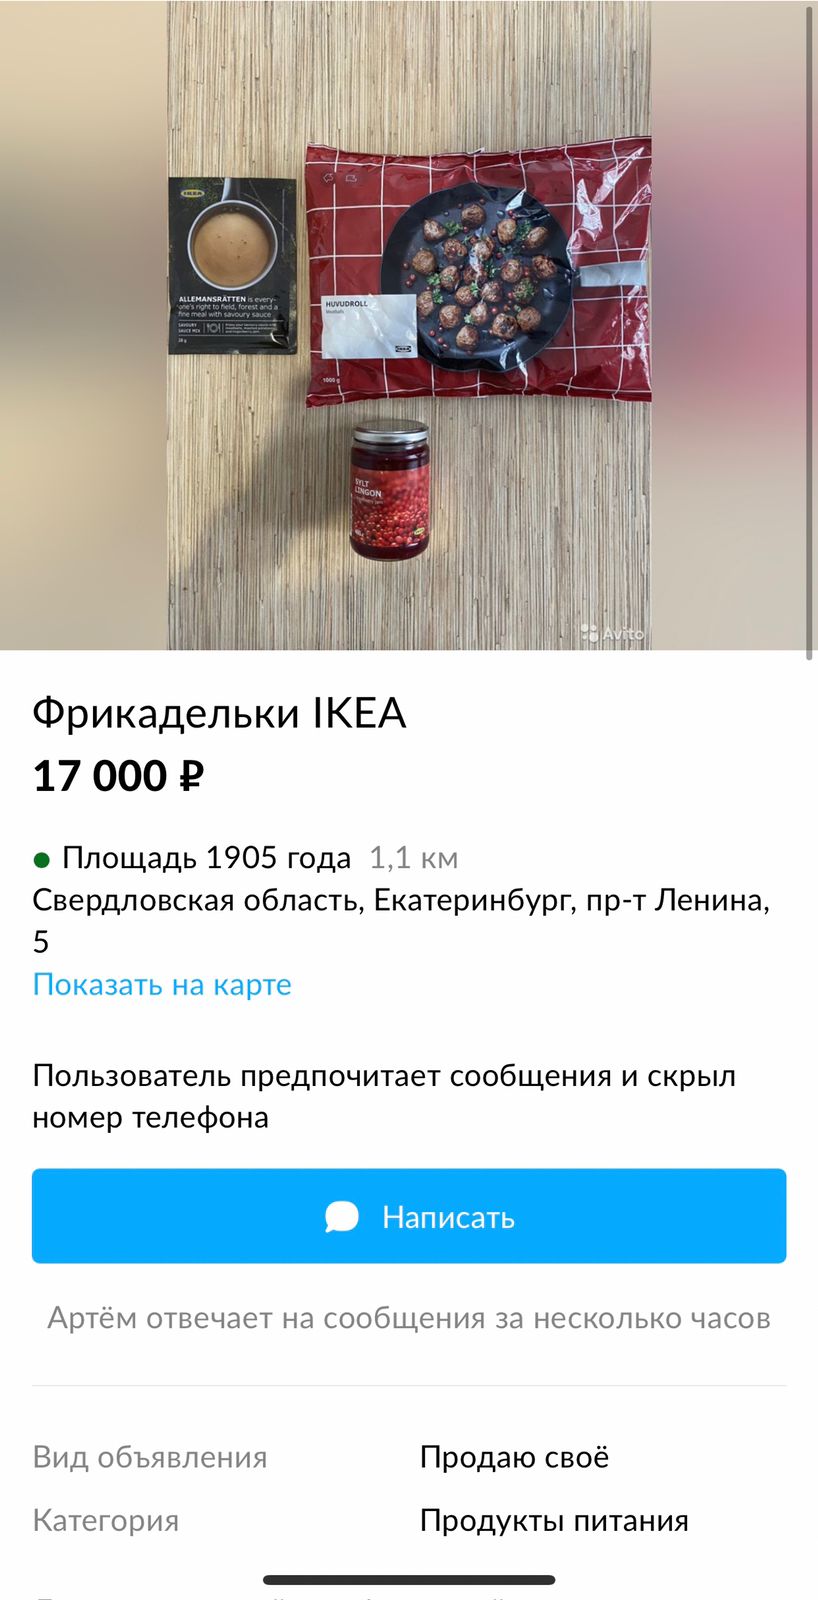 Фрикадельки выставили за 17 тысяч рублей. В комплекте идет соус и джем